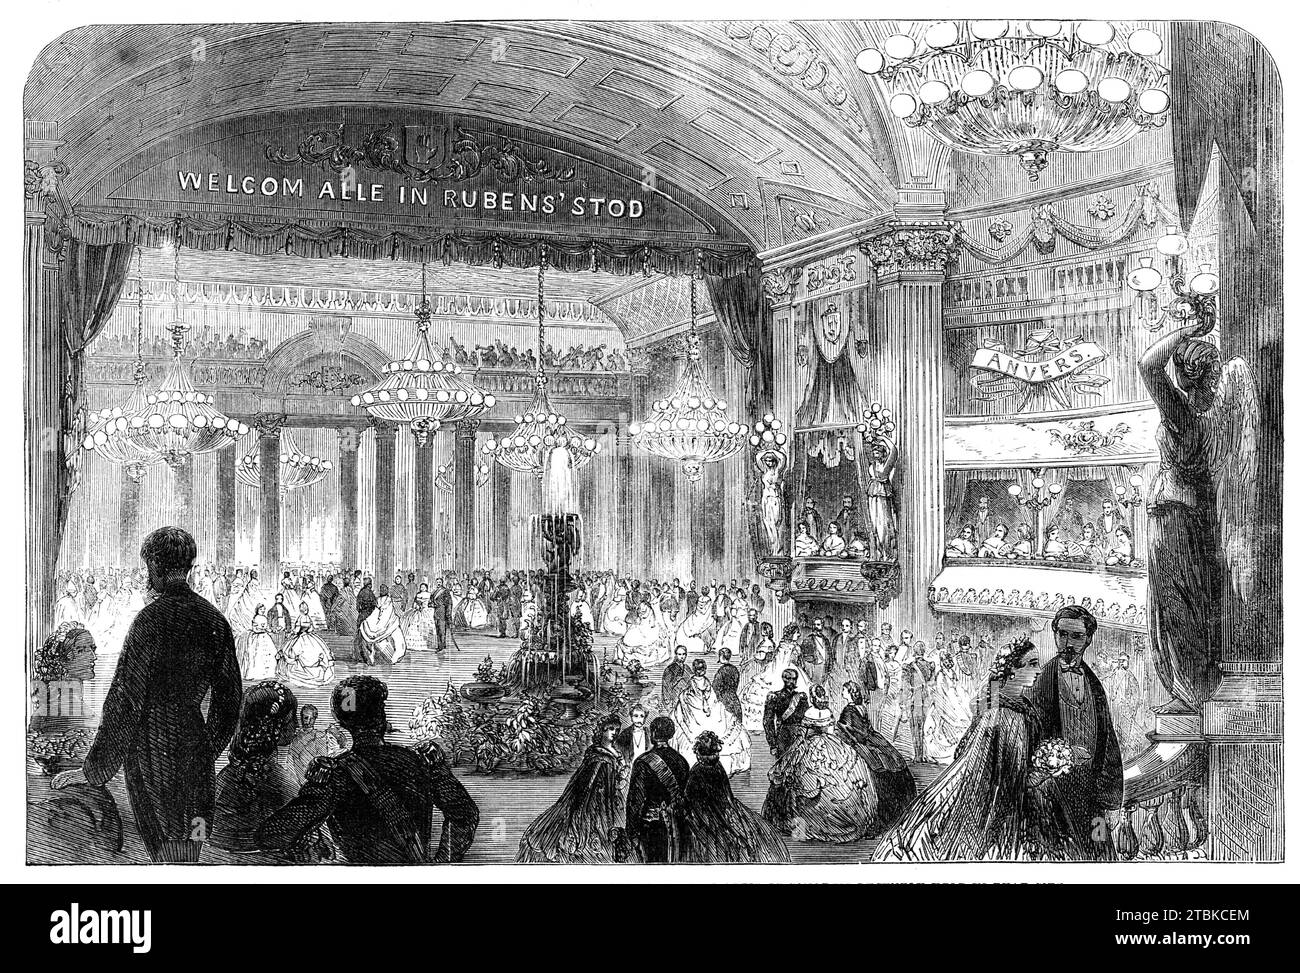 Ball im Theater Antwerpen anlässlich des Kunstkongresses, der vor kurzem in der Stadt 1861 stattfand. "Unser Künstler schickt uns eine Zeichnung des Innenraums des Th&#xe9;t&#xe9;t&#xe9;s in Antwerpen... der Zuschauerbereich war prächtig mit Blumen, Statuen und Fahnen geschmückt, die von der Decke hängend waren... der Bühnenteil des Saals war mit Spalieren, Pilastern, und Blumentafeln... am Montag, als die Tische (nach dem Bankett) entfernt wurden, wurde dieser großzügige Salon in einen Ballsaal verwandelt, mit einigen neuen Dekorationen, einschließlich eines Springbrunnens, umgeben von Flüssen Stockfoto